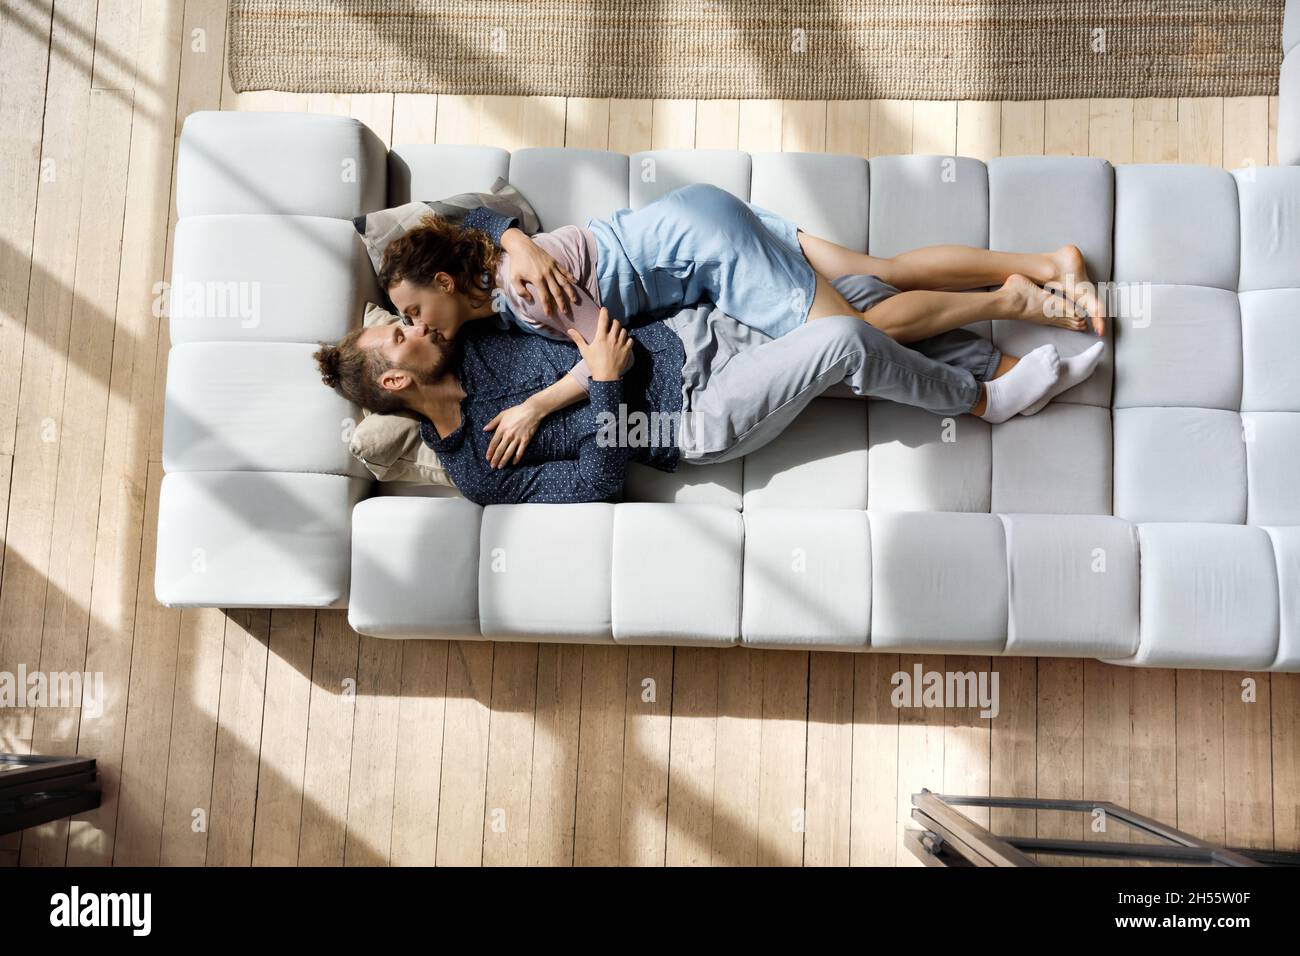 Couple familial millénaire passionné s'embrassant, se détendant sur un canapé. Banque D'Images